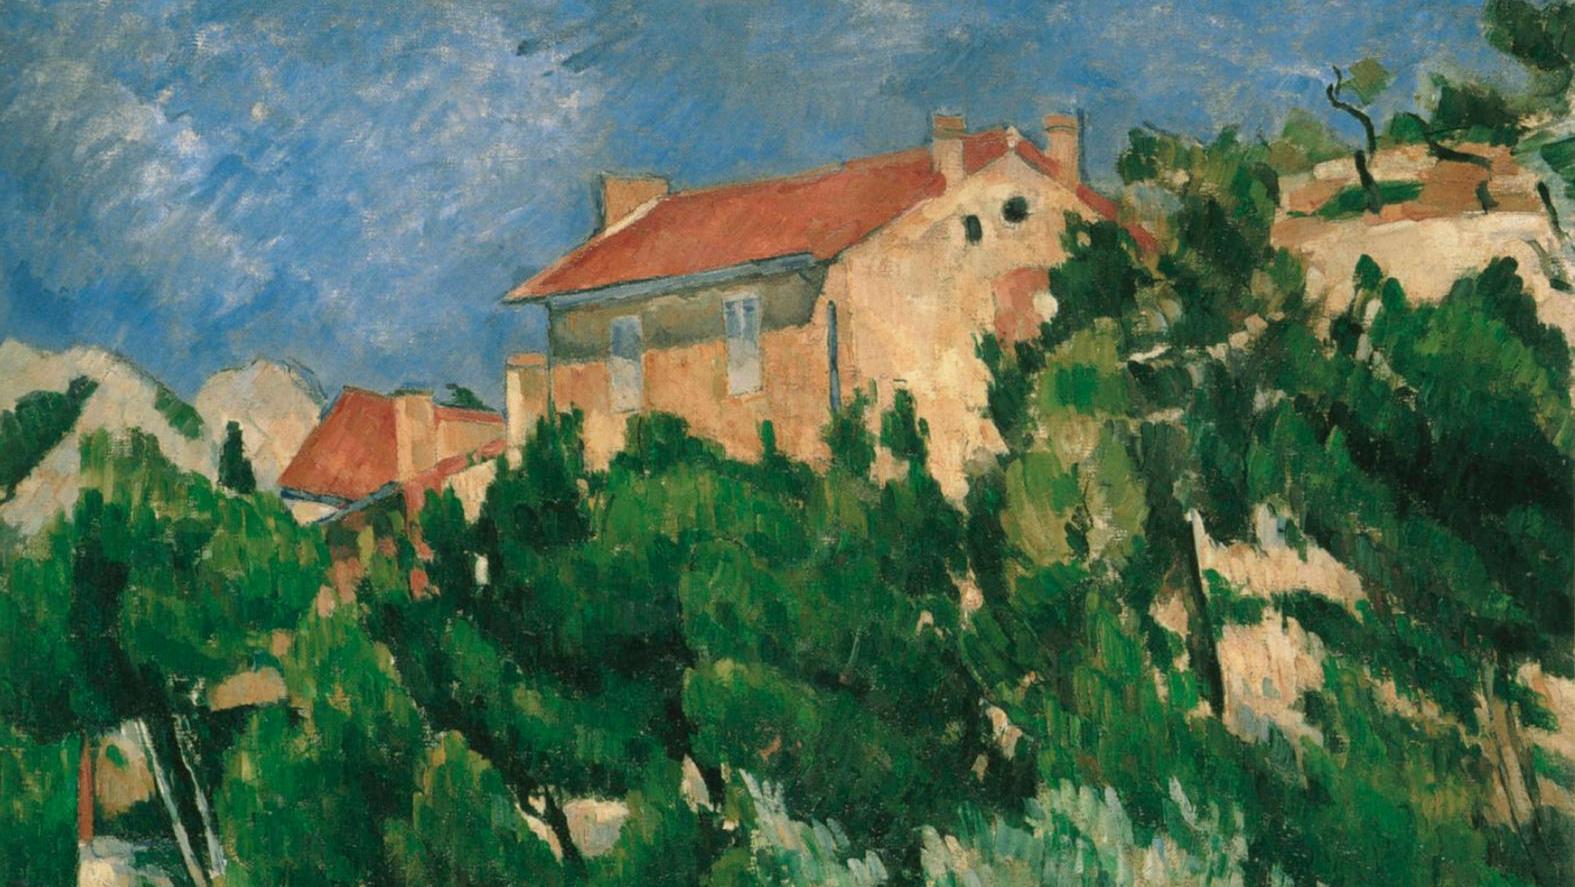 Paysage en Provence, 1879-1882, huile sur toile, 54,7 x 65,5 cm, détail, Hakone,... Dans l’œil de Cézanne